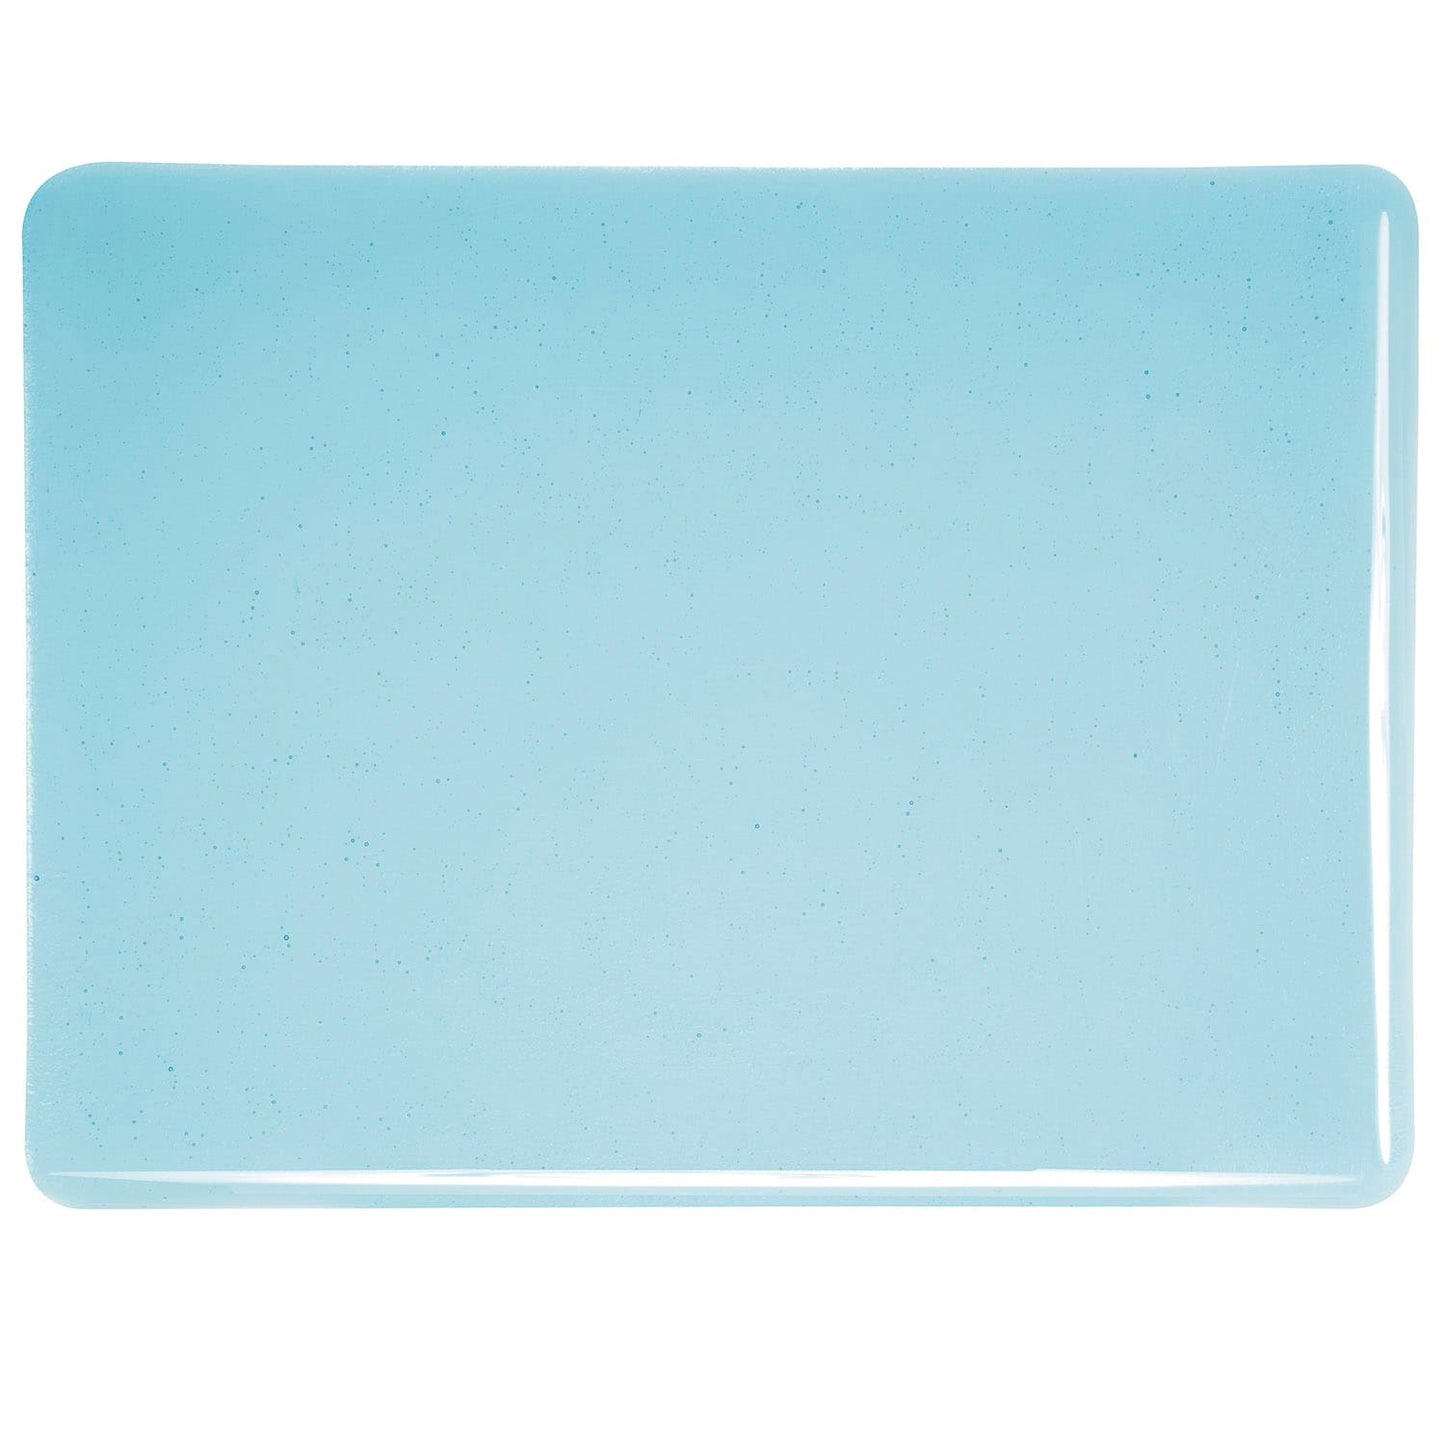 Bullseye COE90 Fusing Glass 001416 Light Turquoise Blue Handy Sheet